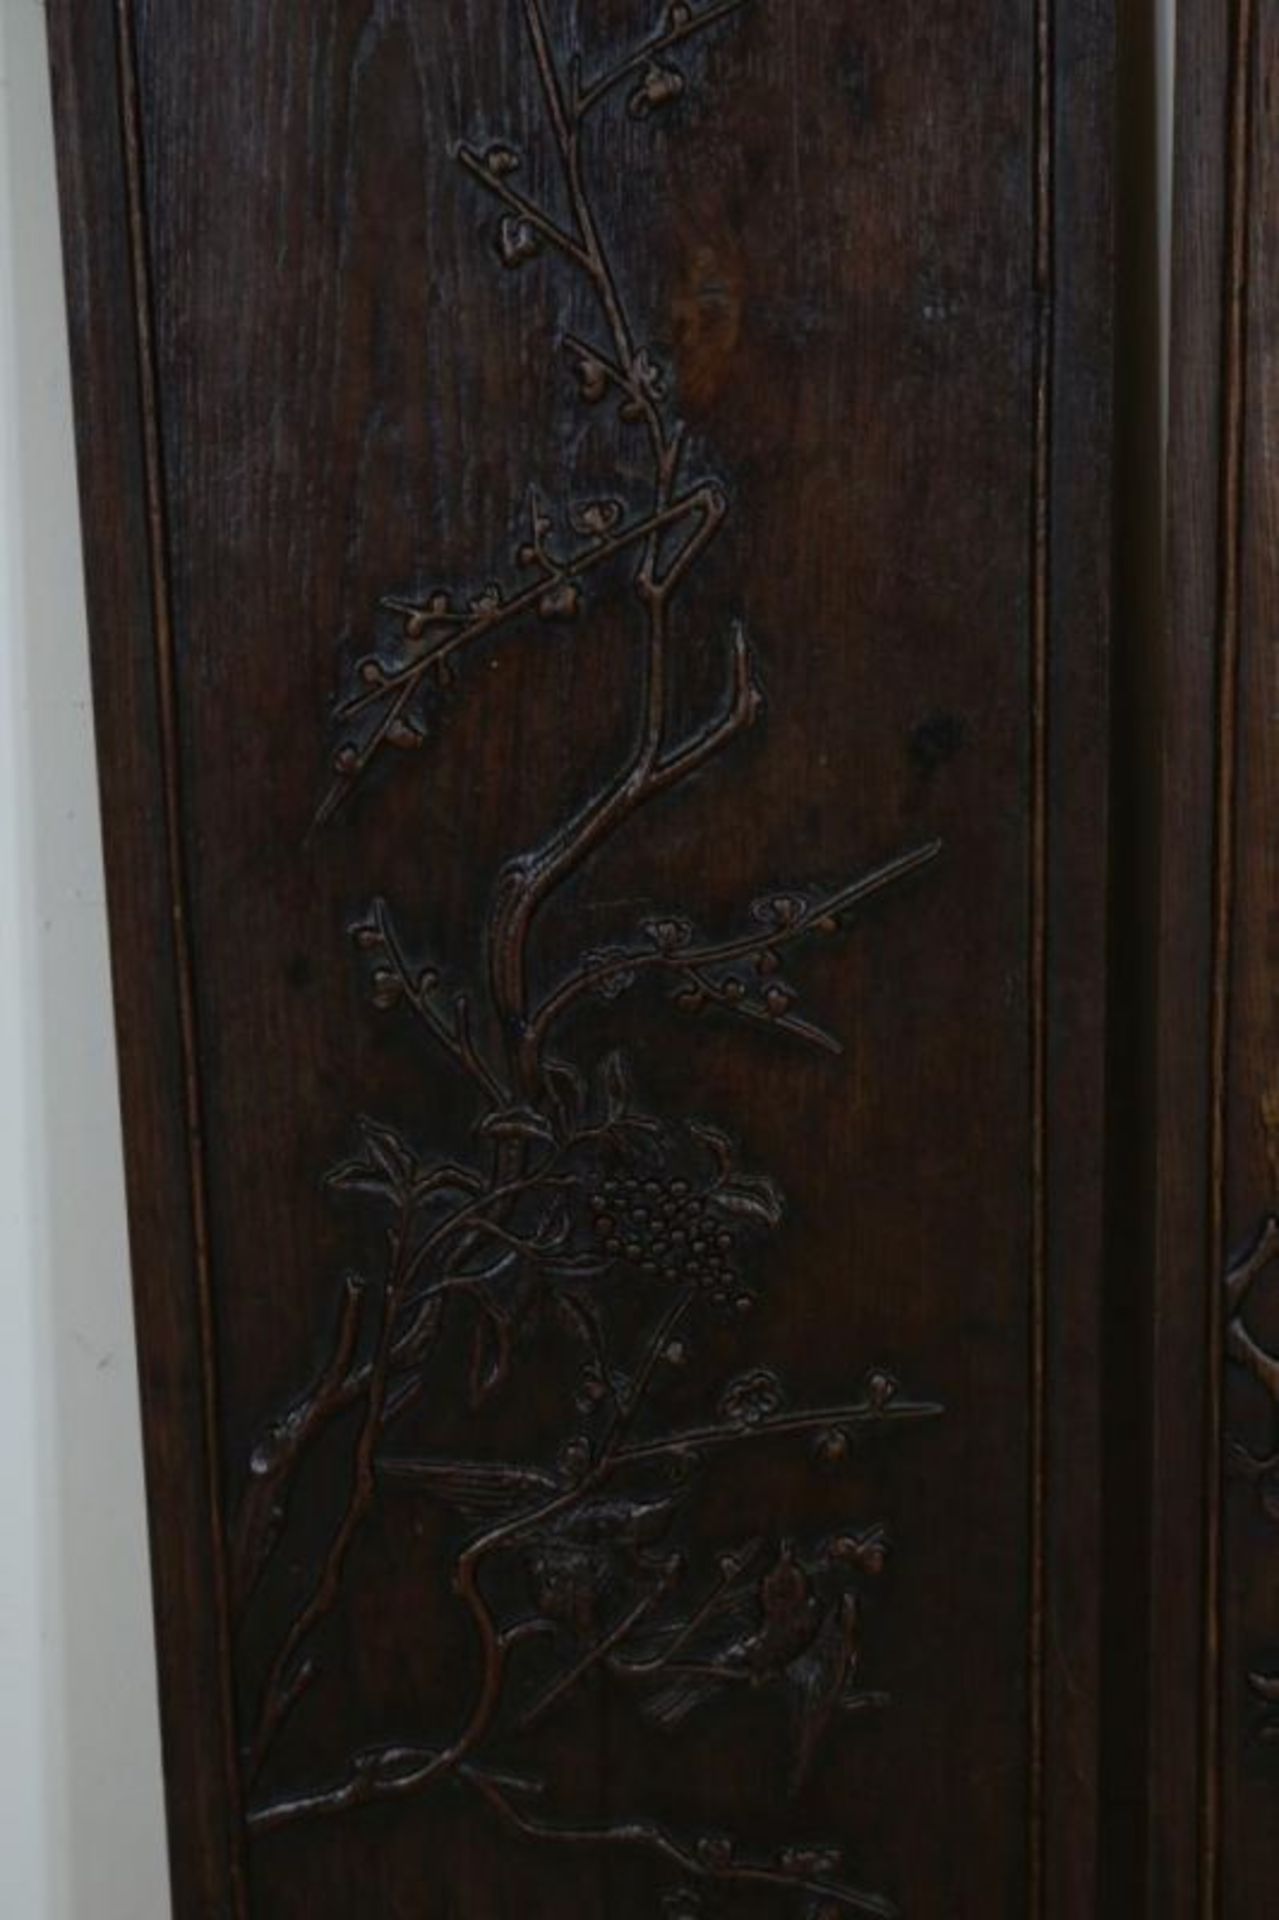 Stel houten wandpanelen met relief gestoken vogels op tak, 87 x 27 cm. - Bild 2 aus 3